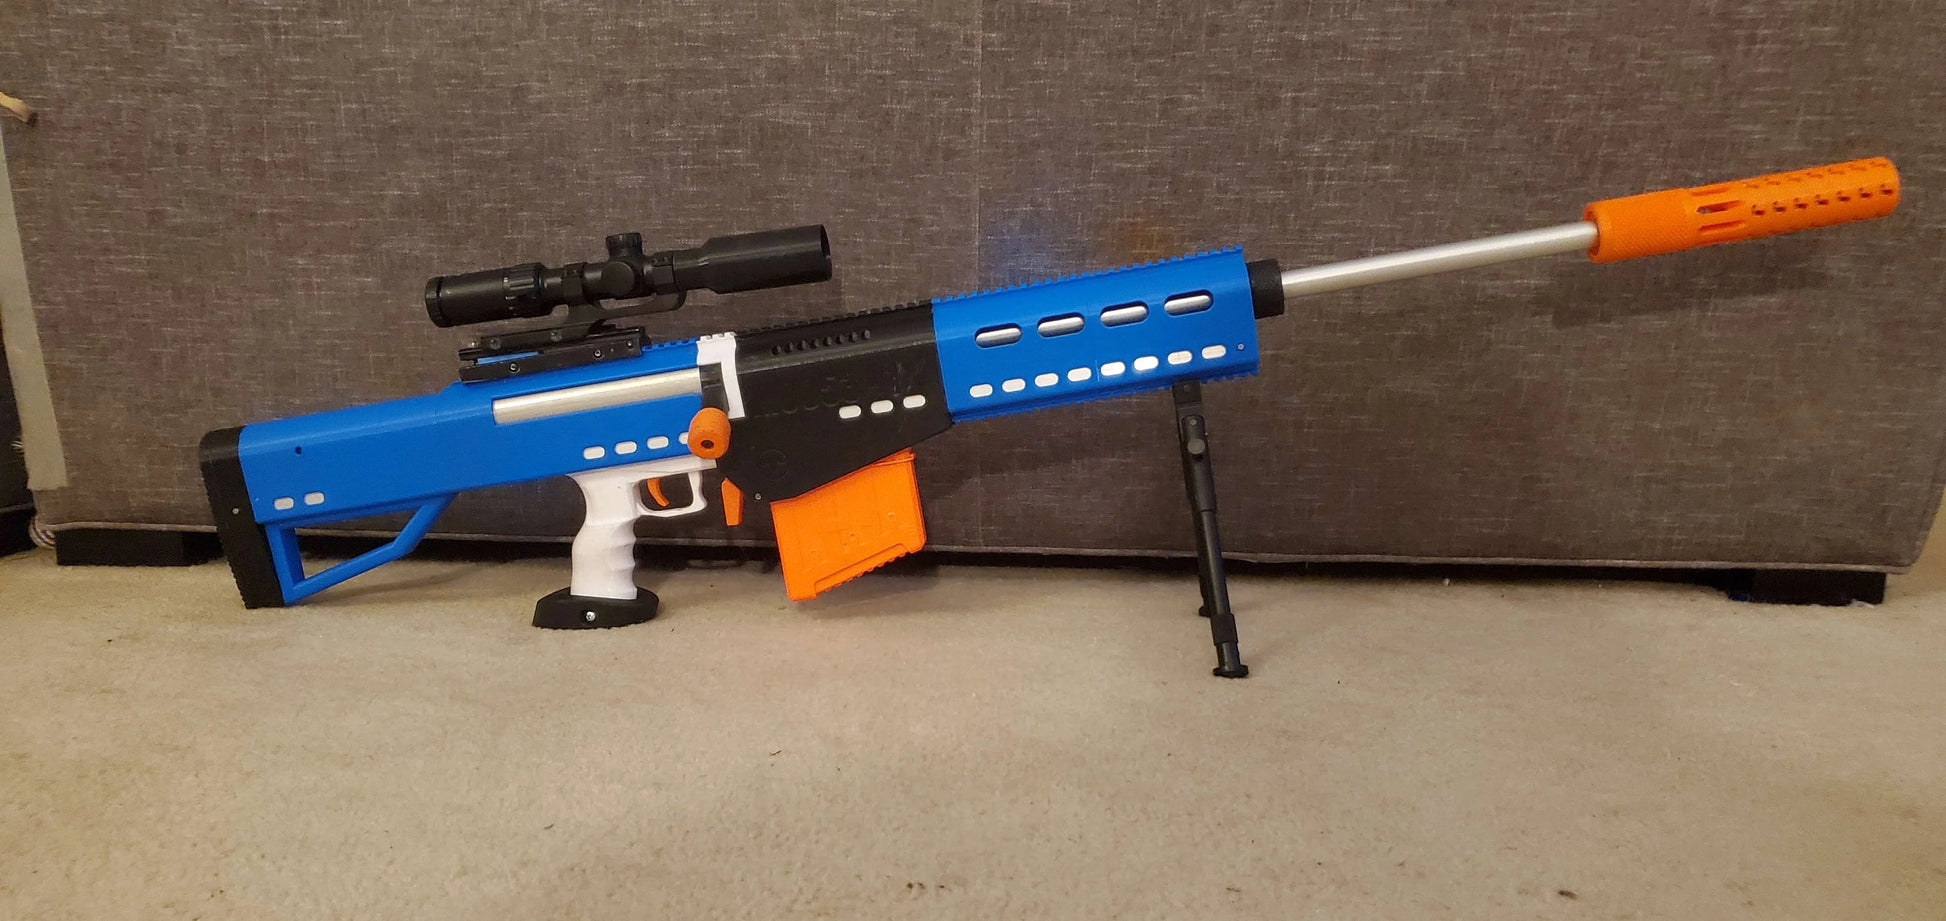 M0053-1 Mega Sniper Rifle - Completed – Moose Mod Shop